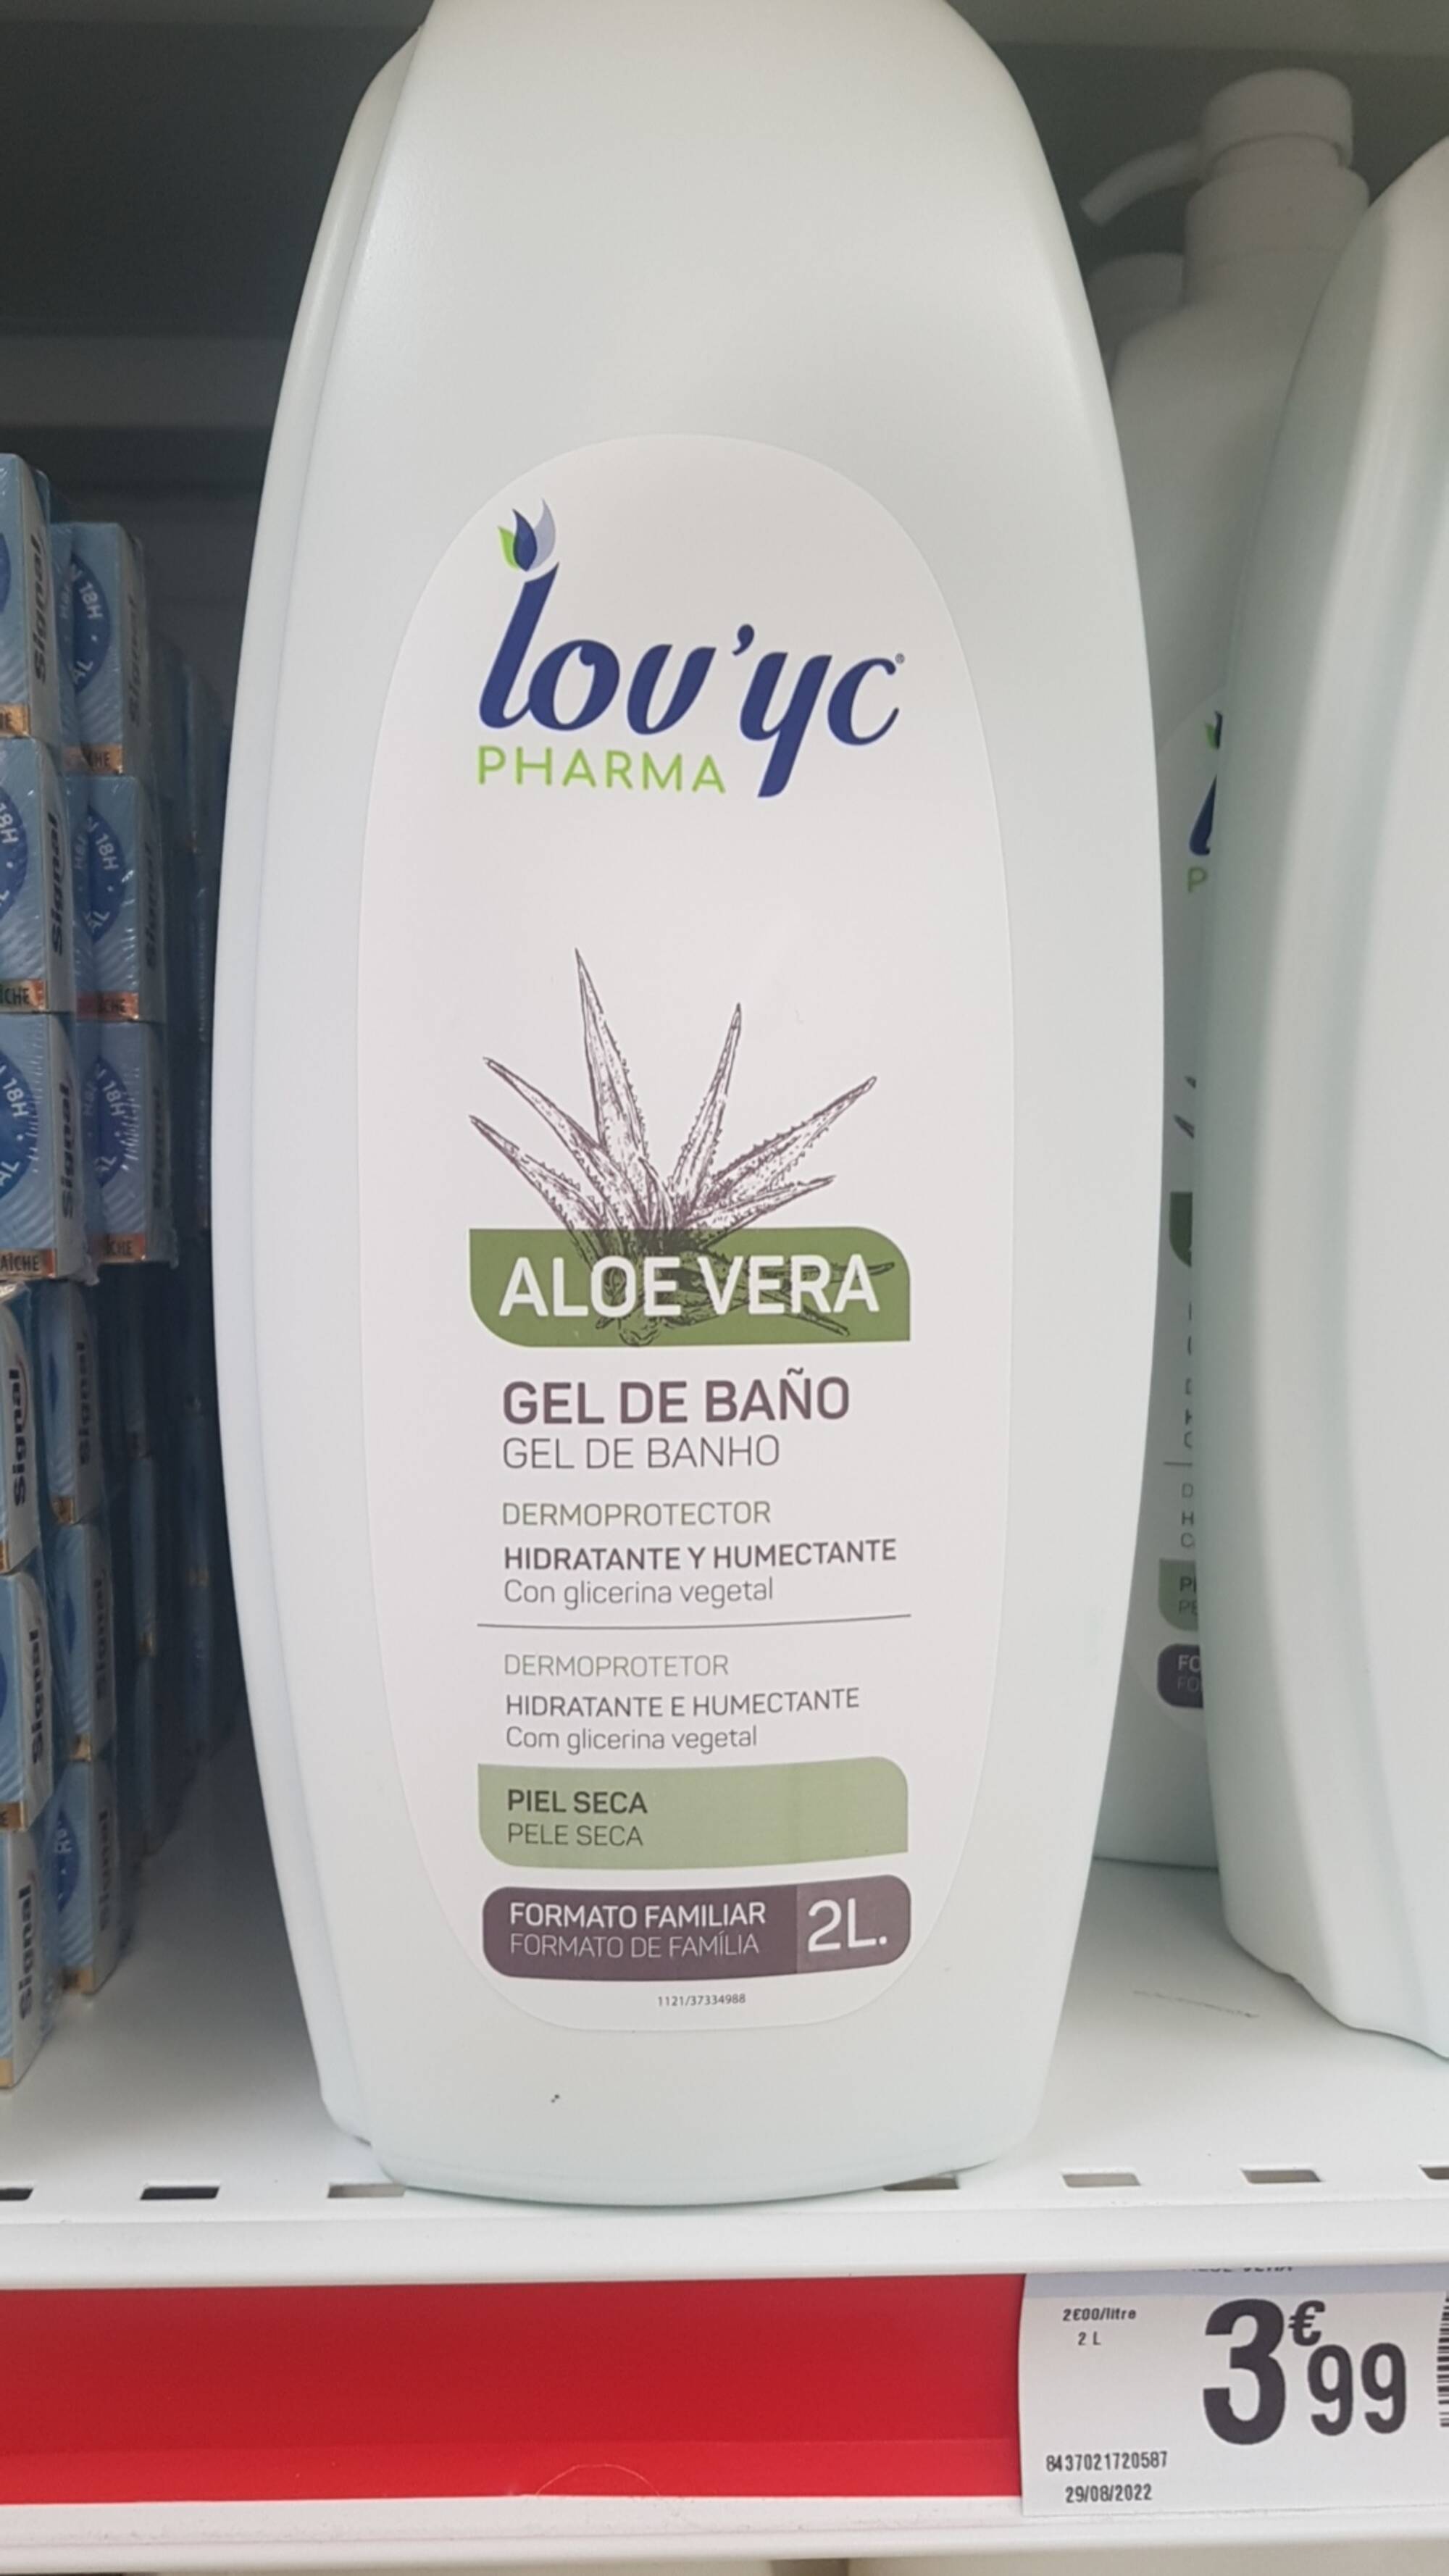 LOV'YC - Aloe vera - Gel de banho